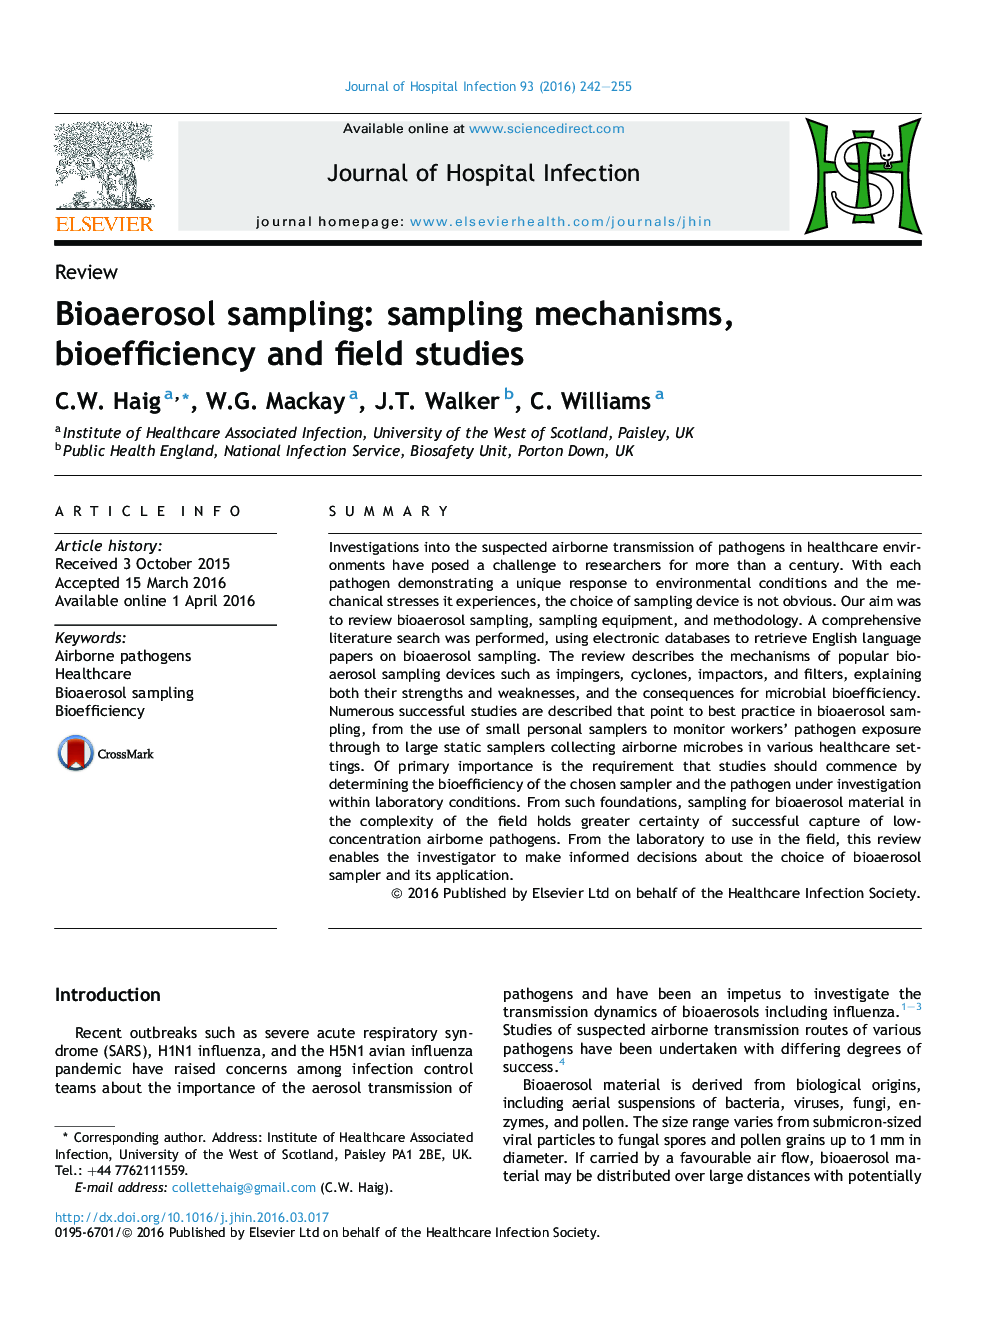 Bioaerosol sampling: sampling mechanisms, bioefficiency and field studies